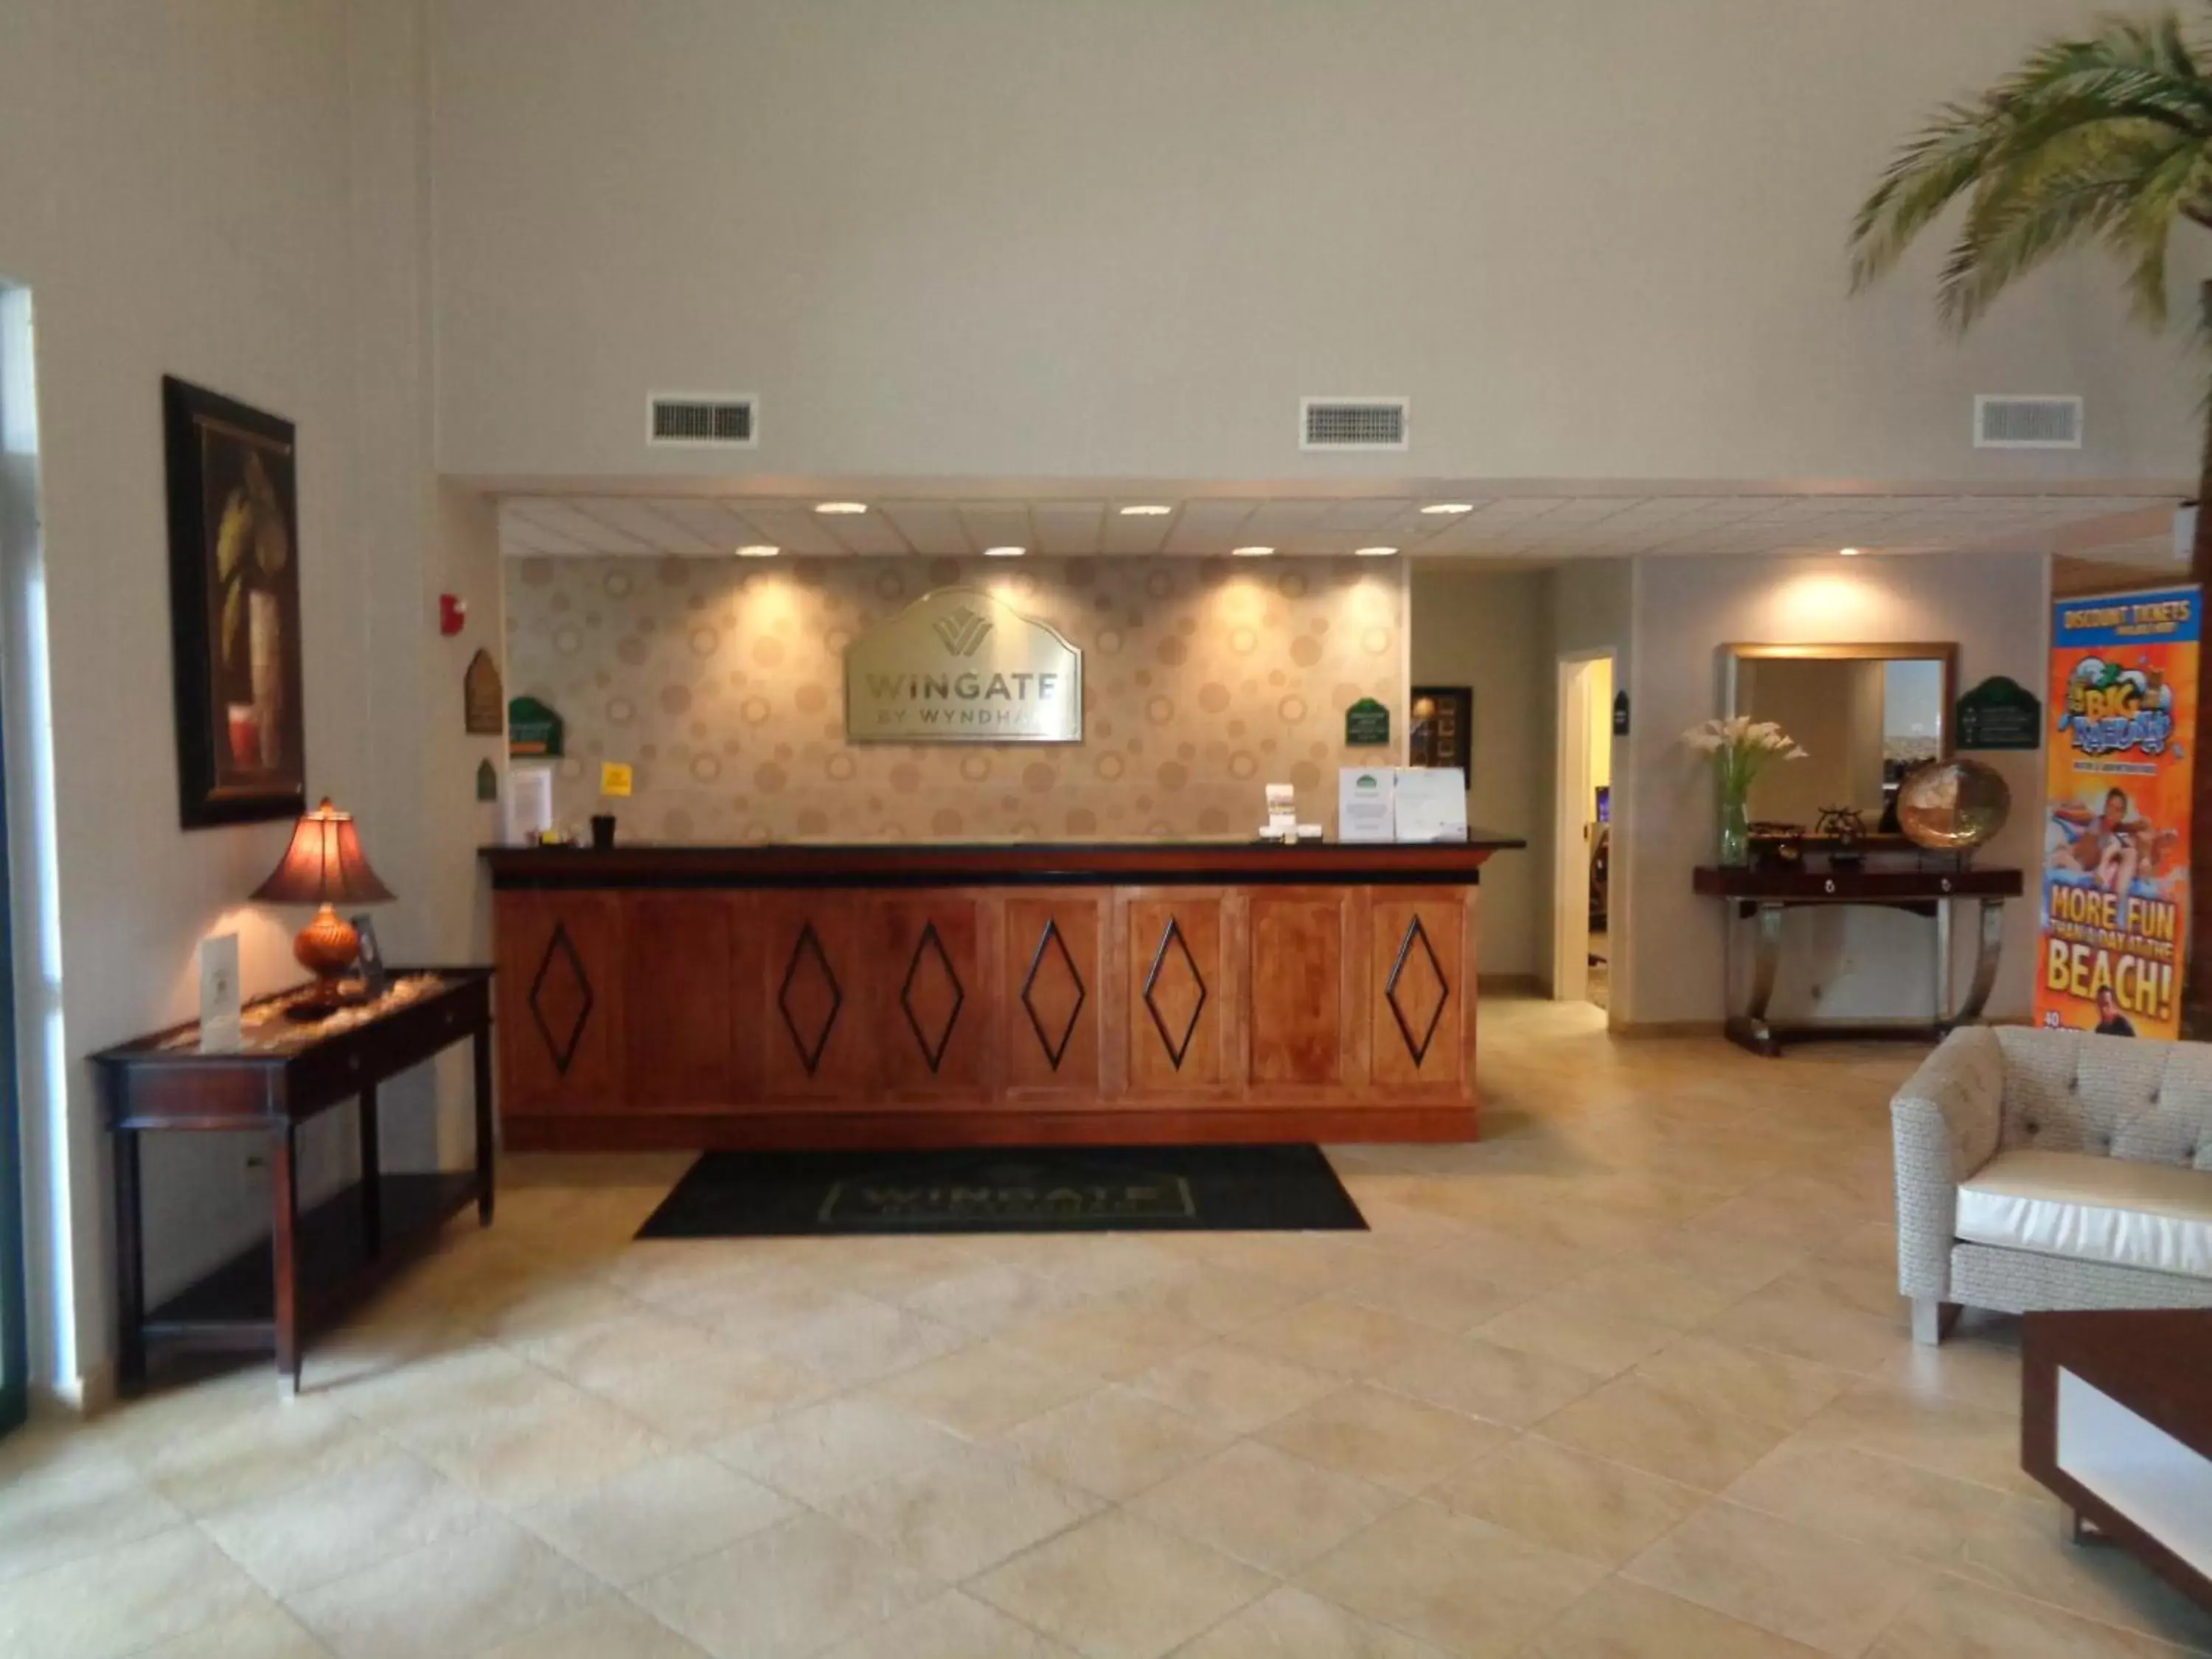 Lobby or reception, Lobby/Reception in Wingate by Wyndham Destin